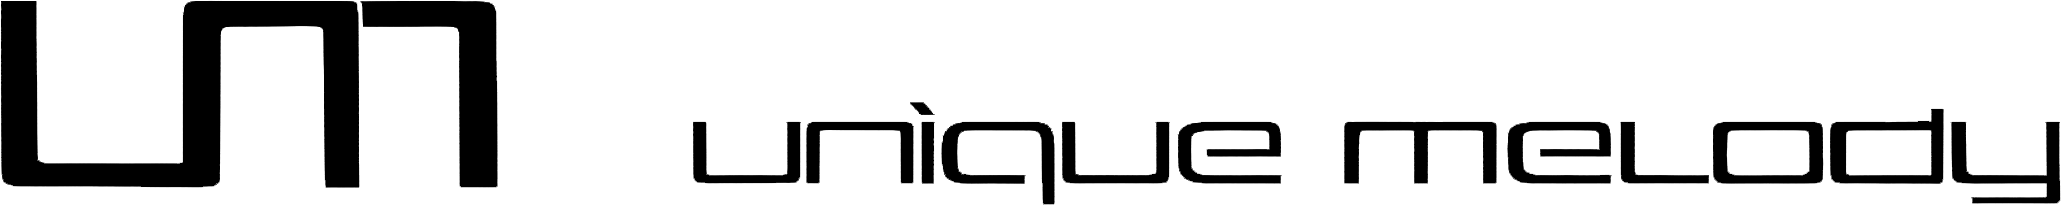 Unique Melody Logo black